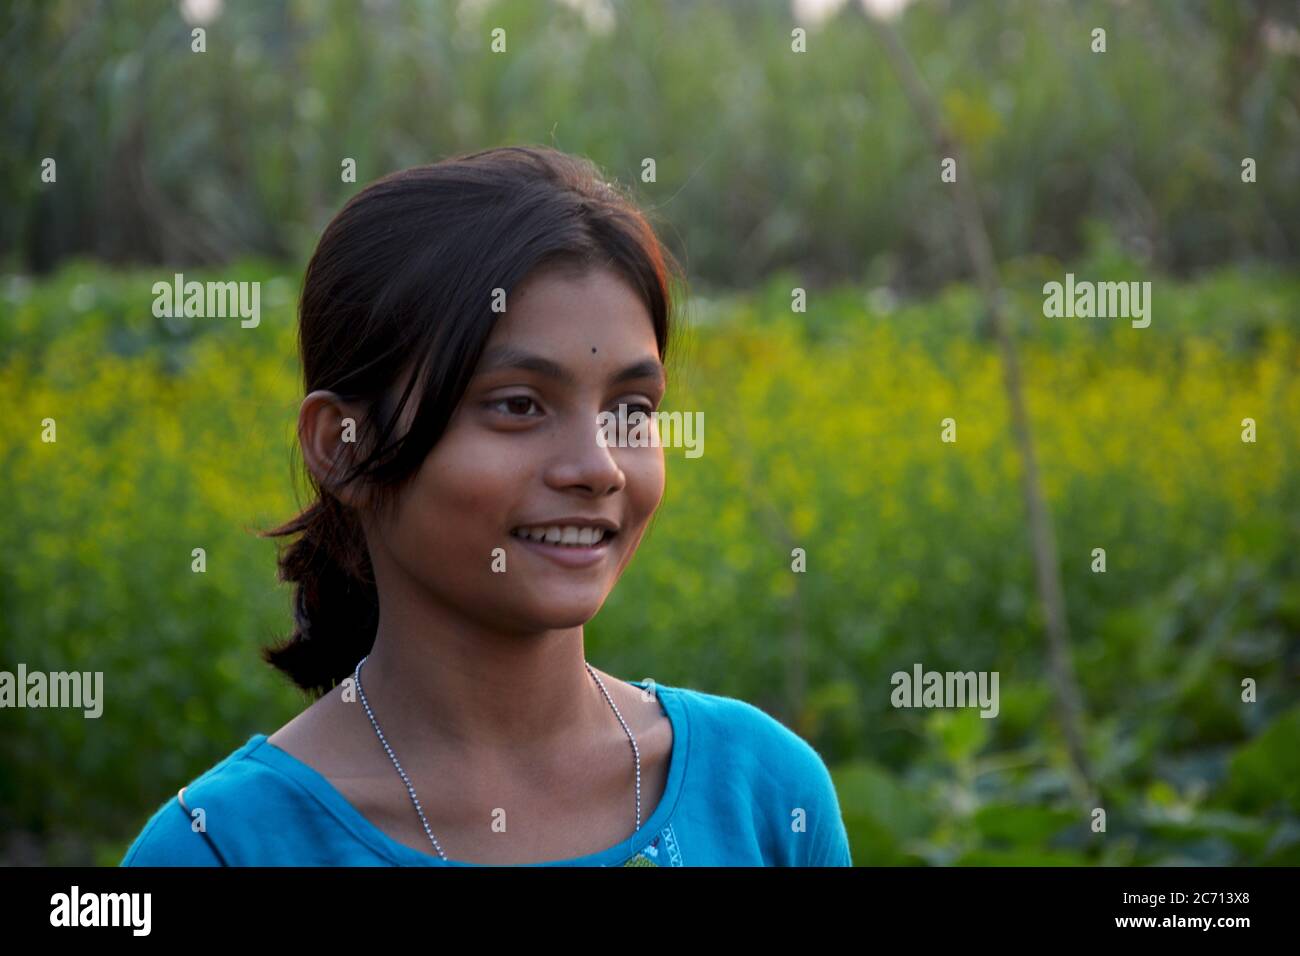 Ein indisches Teenager-Mädchen lächelt in einem ländlichen Dorf Feld, selektive Fokussierung Stockfoto